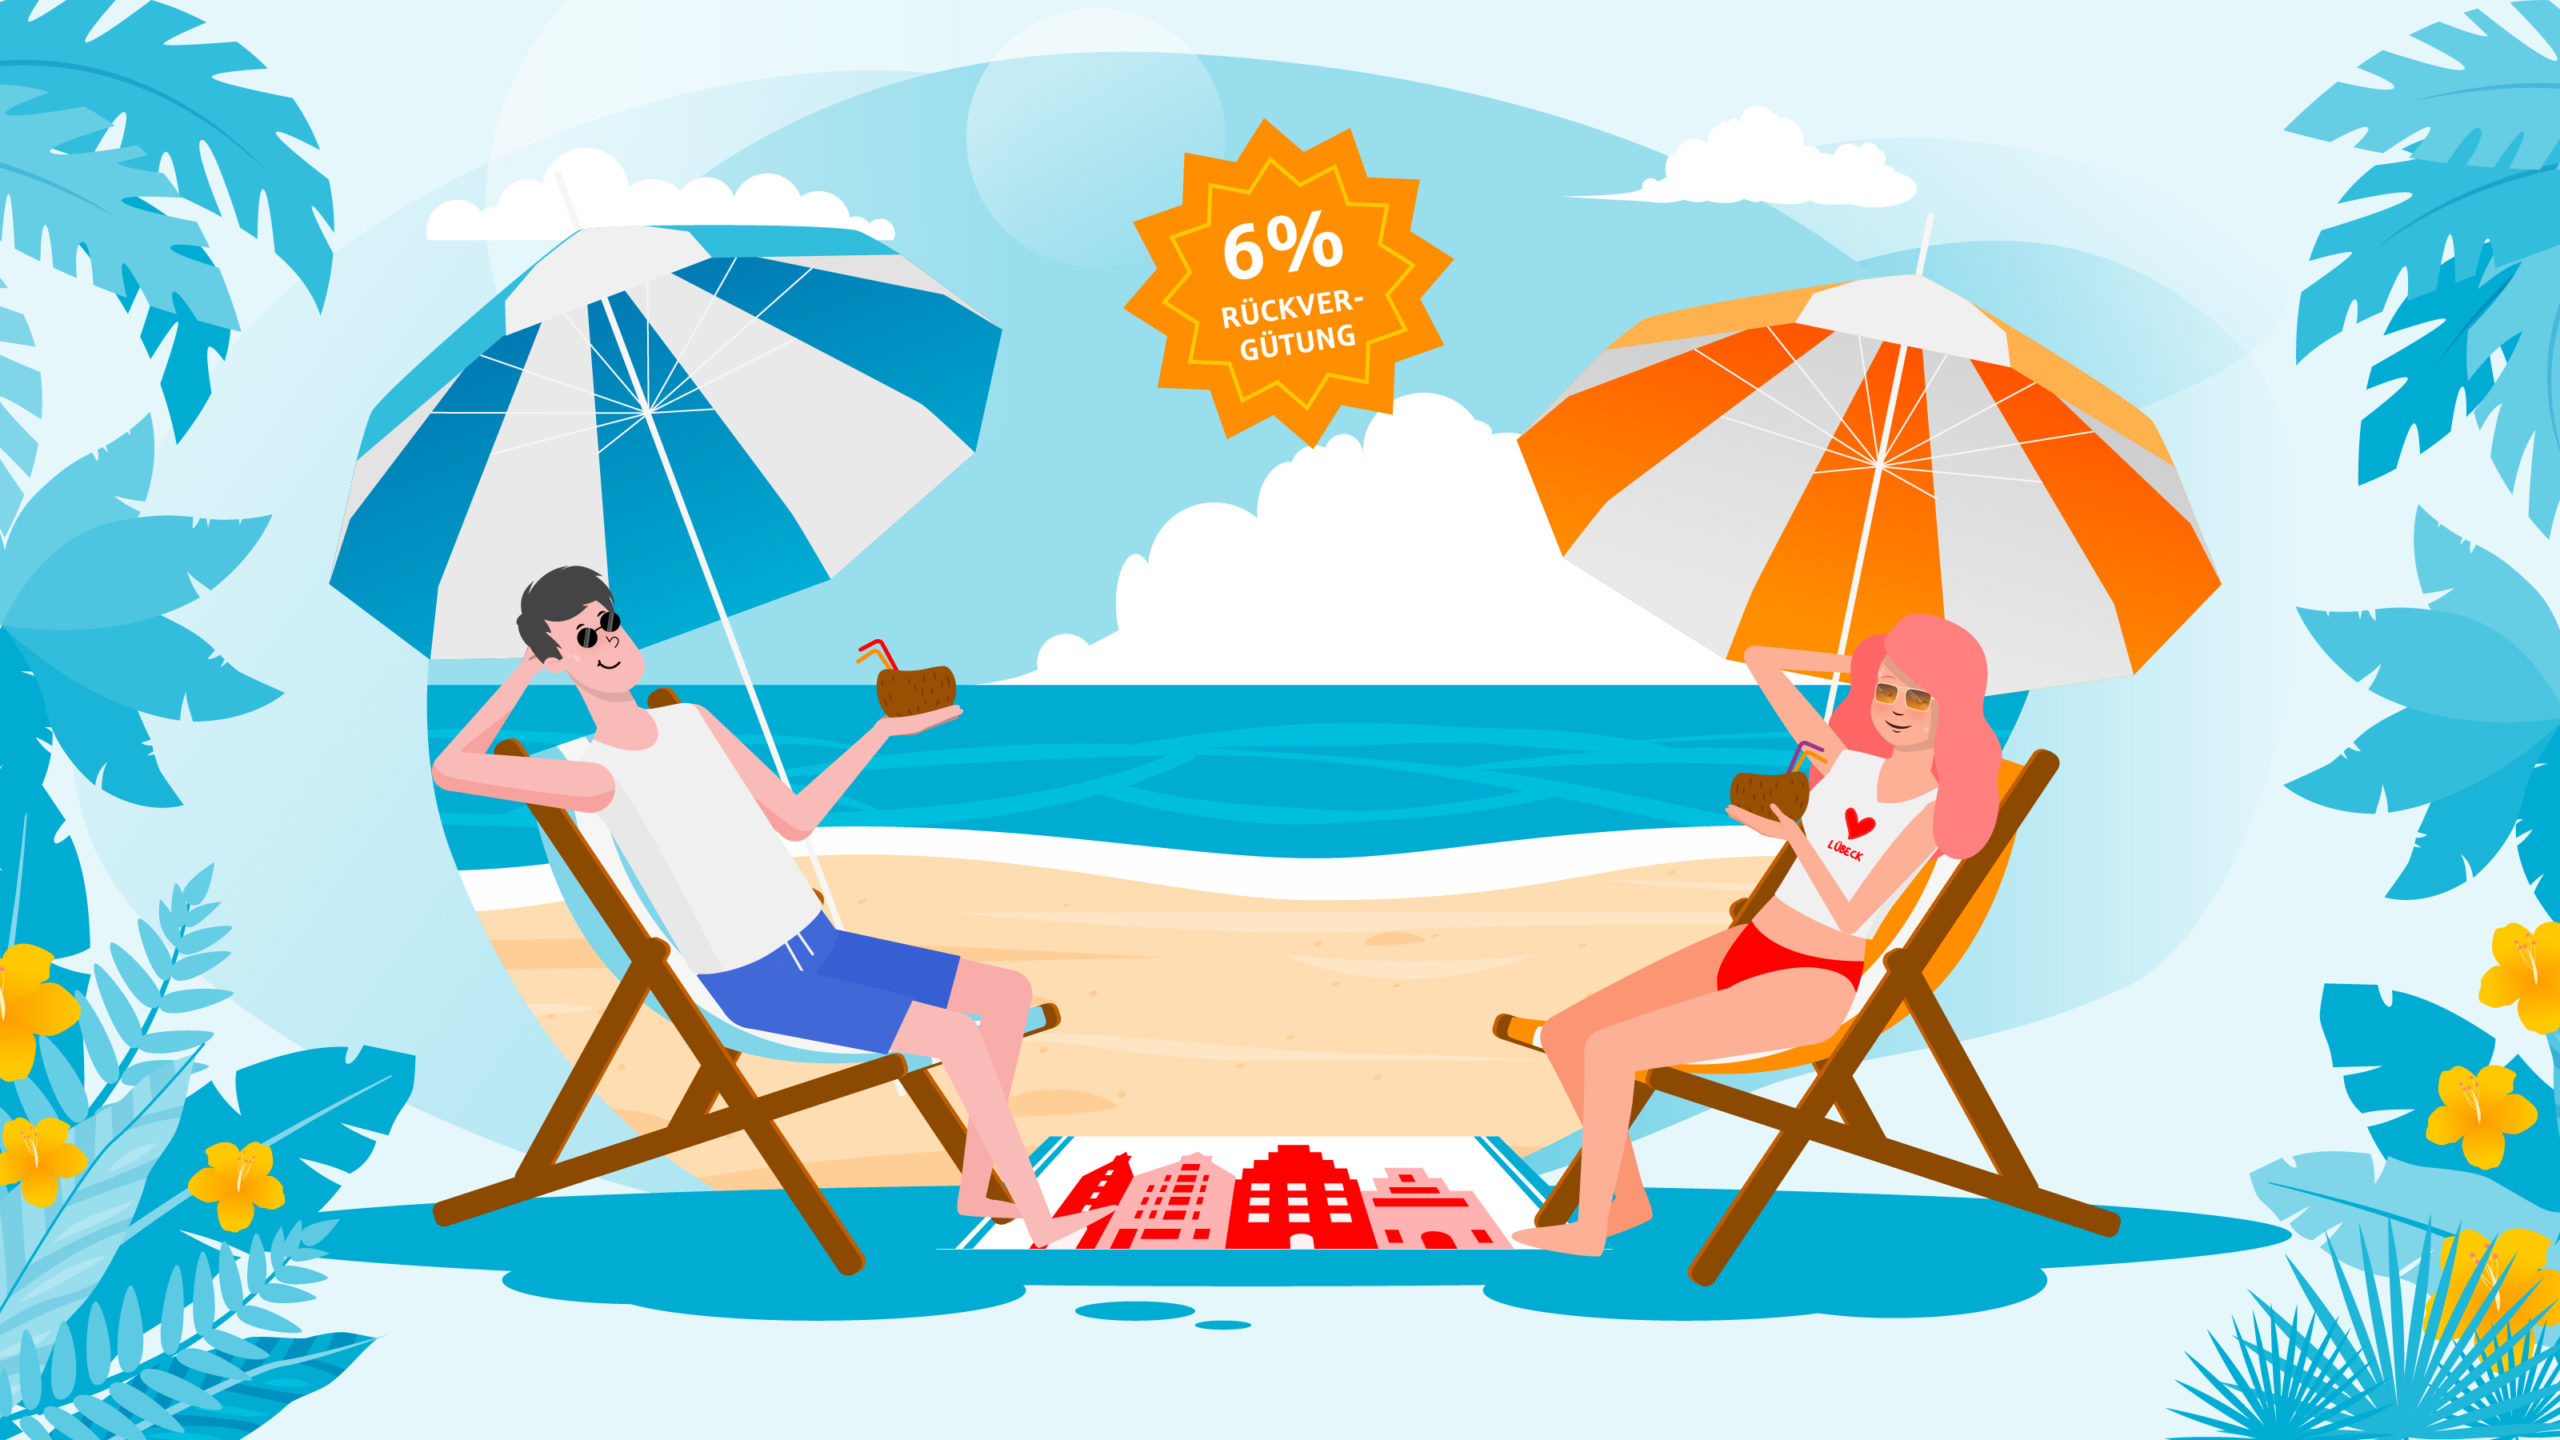 Frau und Mann sitzen im Liegestuhl am Strand und trinken ein Getränk aus einer Kokosnuss. Rabatt steht in der Mitte des Bildes. Thumbnail für eine Animation über ein Produkt der Sparkasse Lübeck.